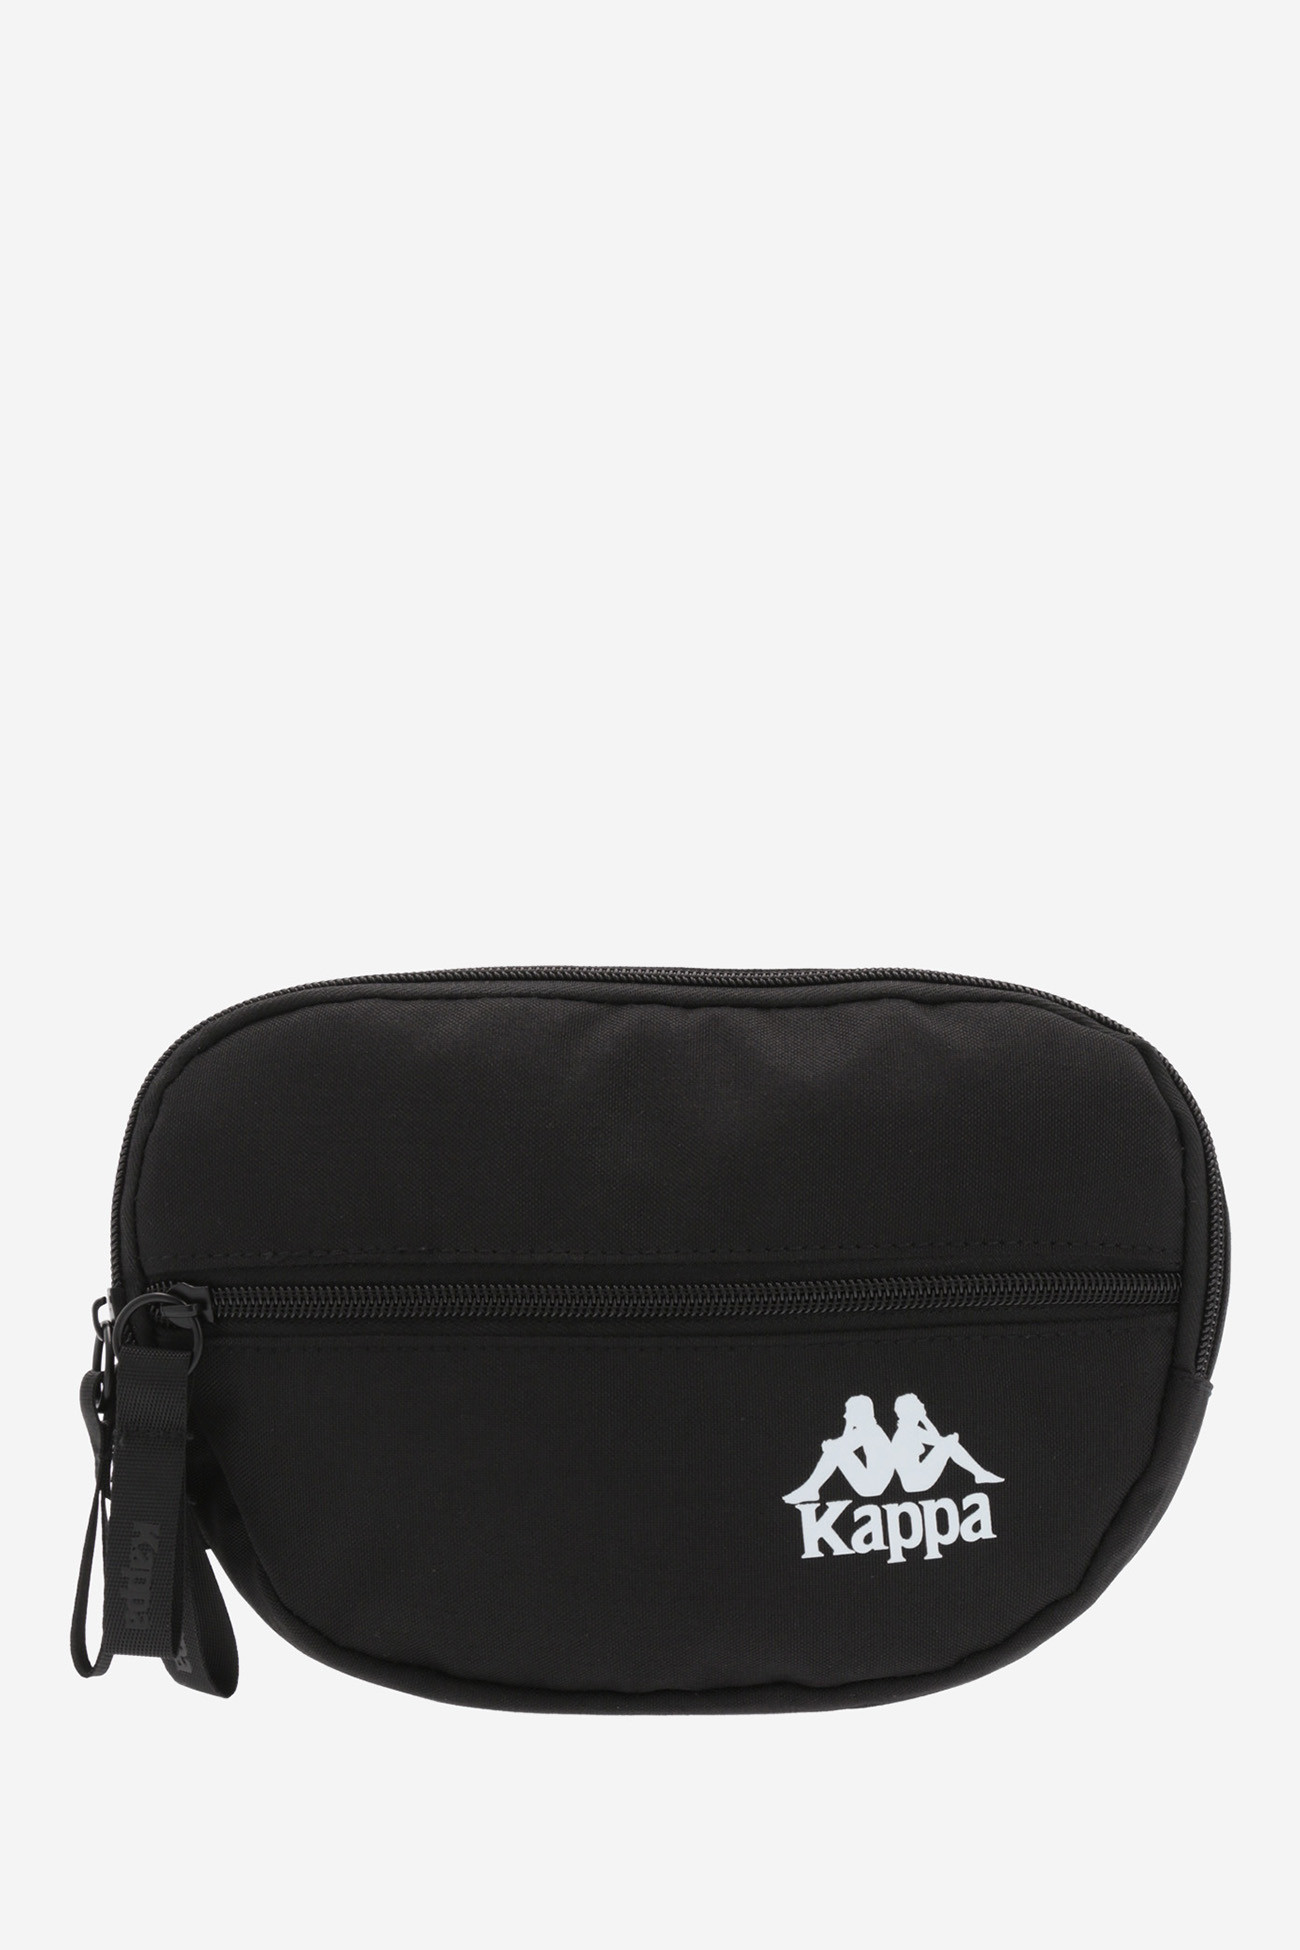 Сумка Kappa Bag черная 113895-99 изображение 2